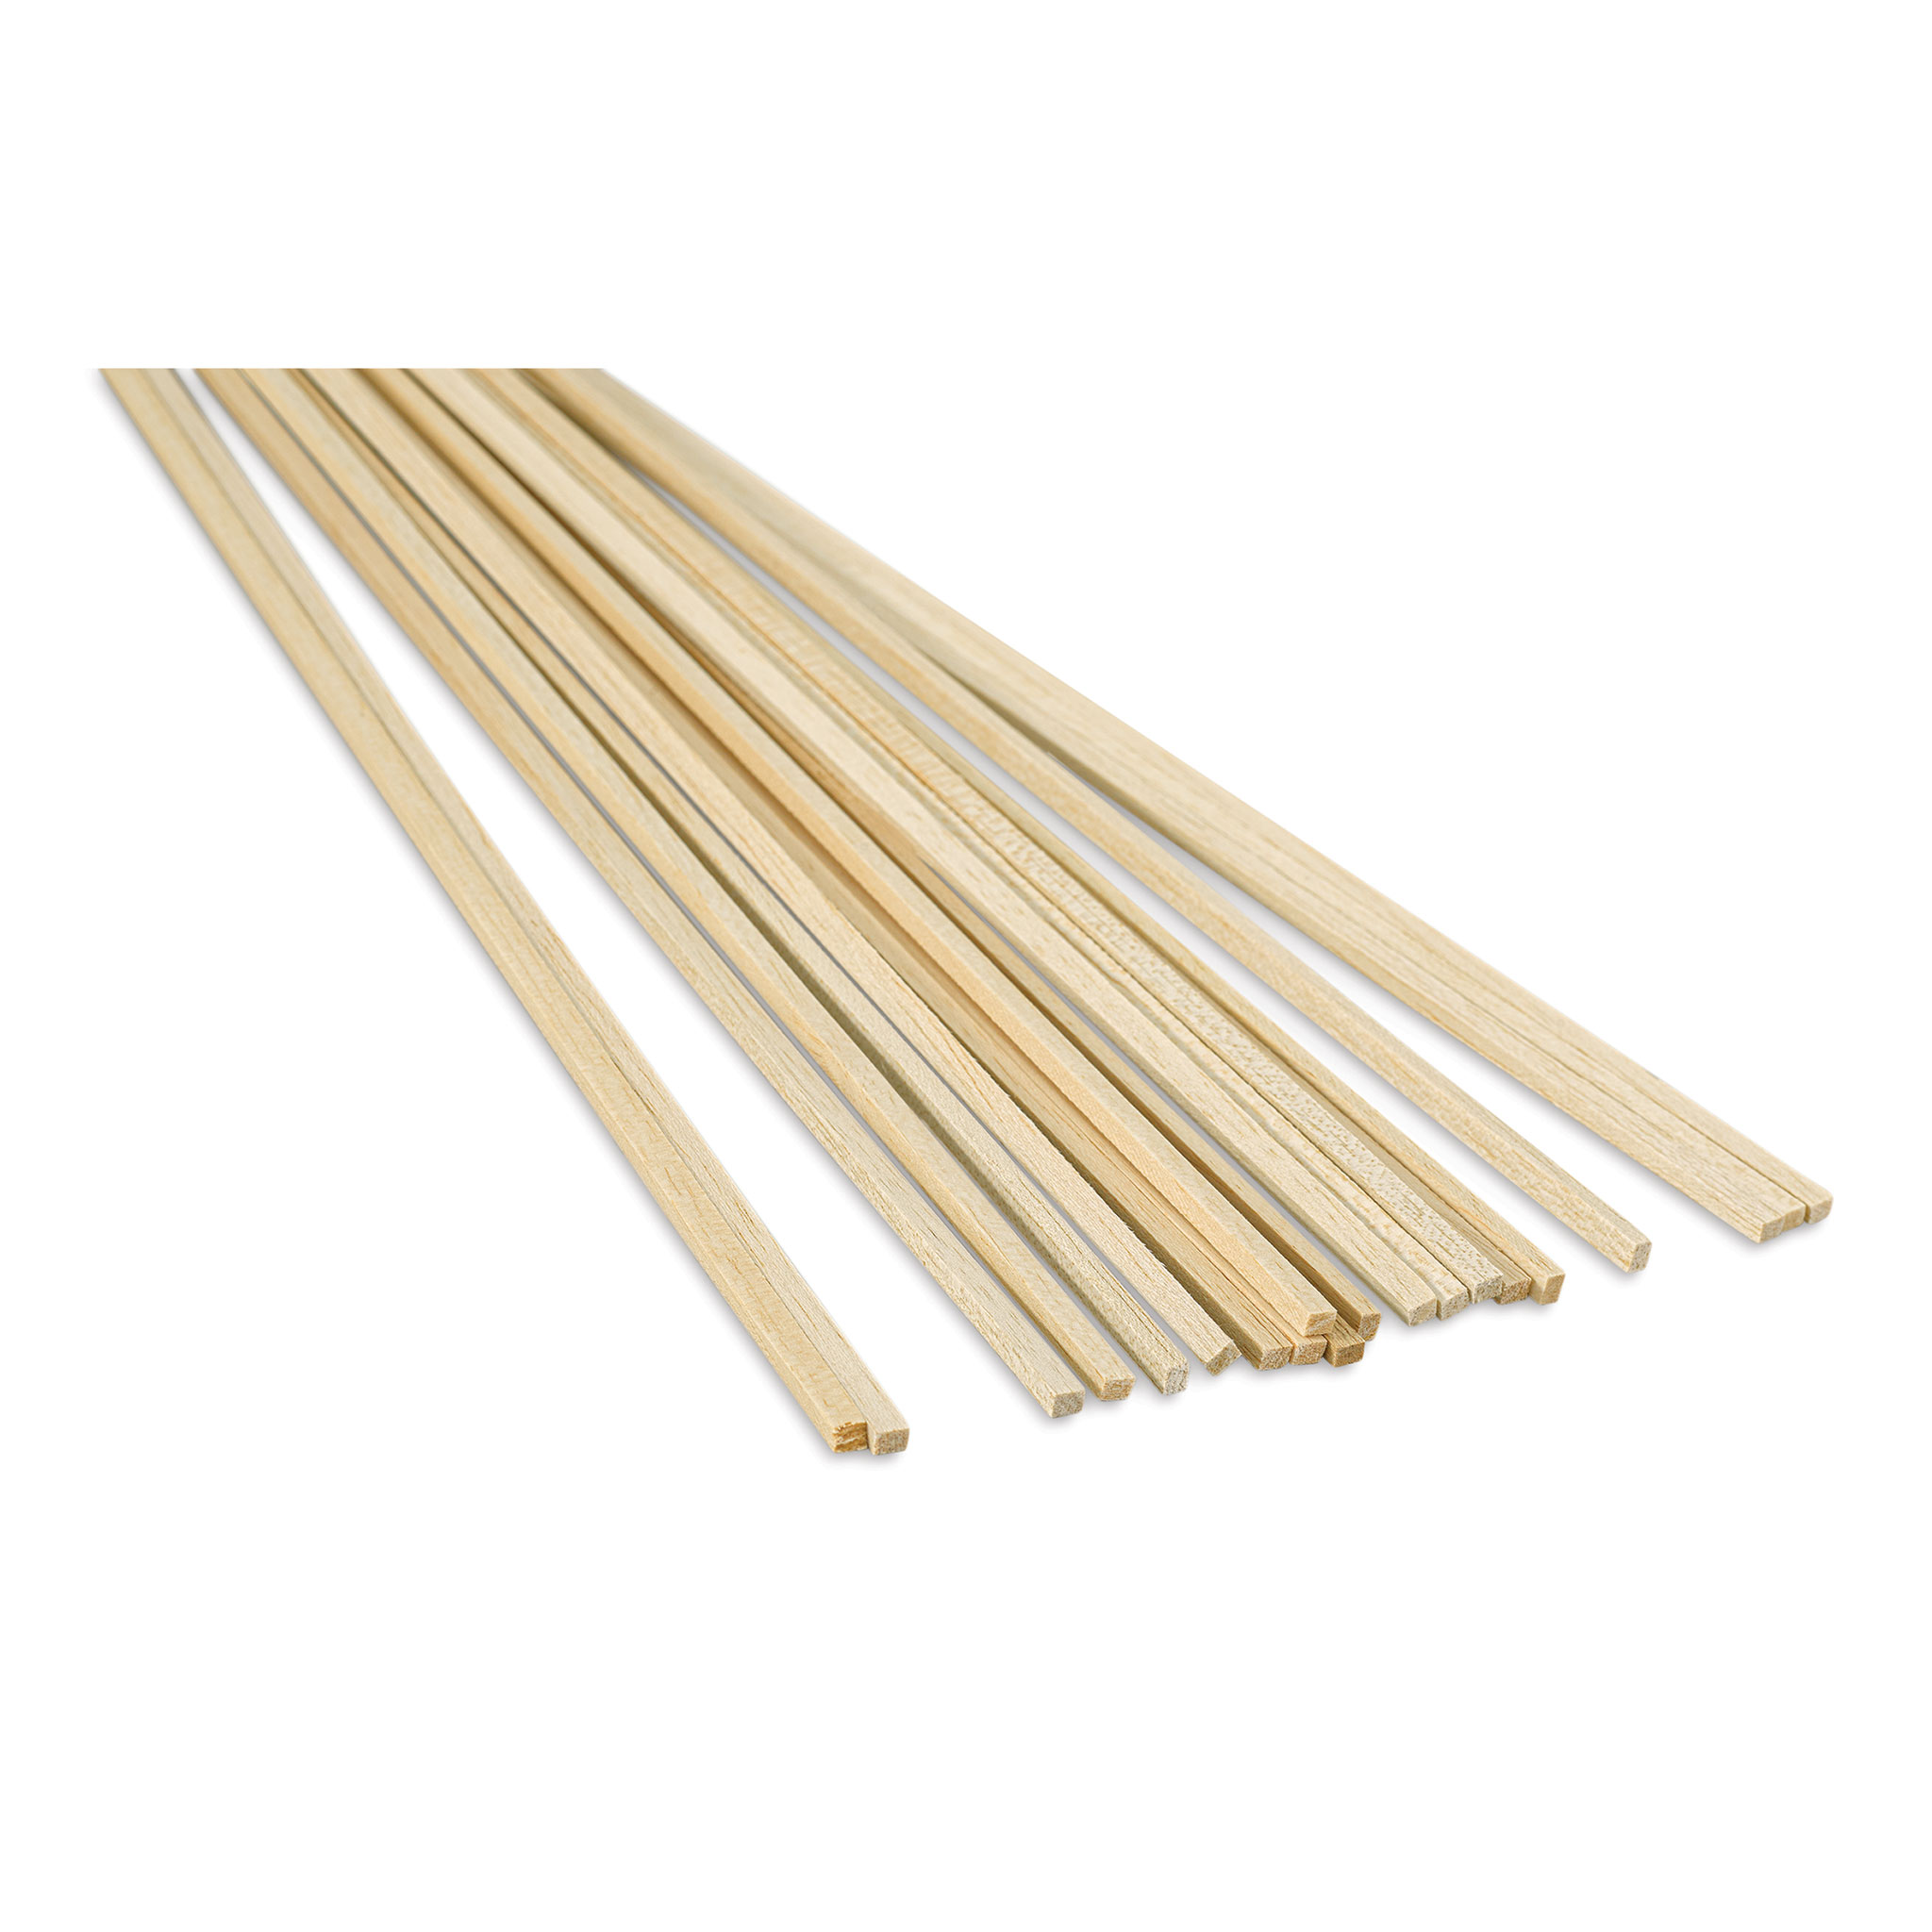 Bud Nosen Balsa Wood Sticks - 1/4 x 1 x 36, Pkg of 10